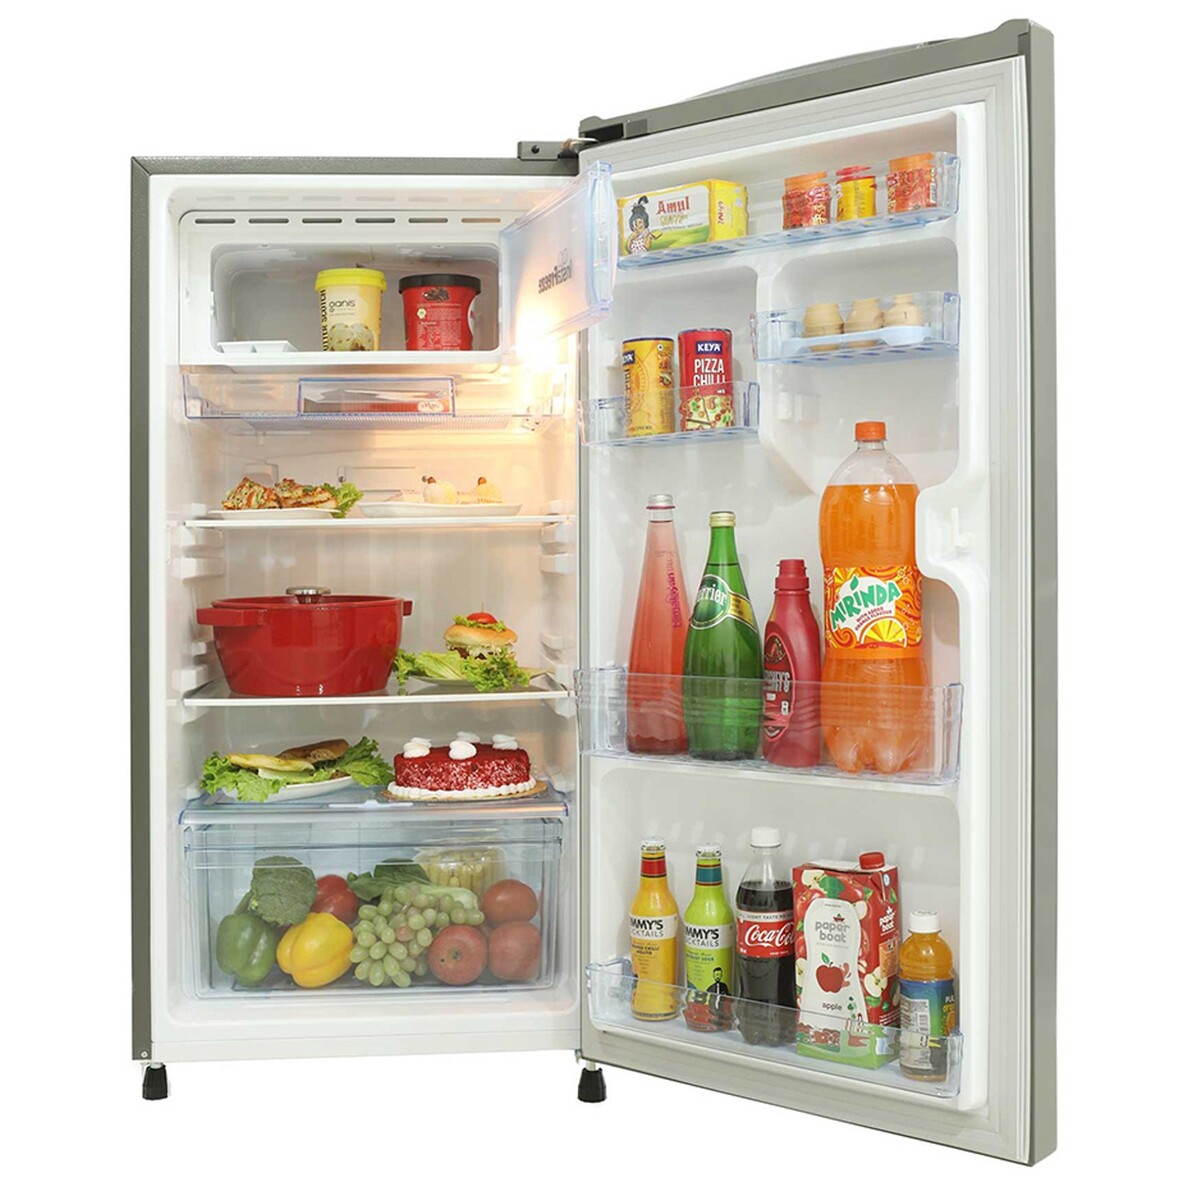 Lloyd Direct Cool Single Door Refrigerator GLDF213SRGT2EB 200L Royal Grey